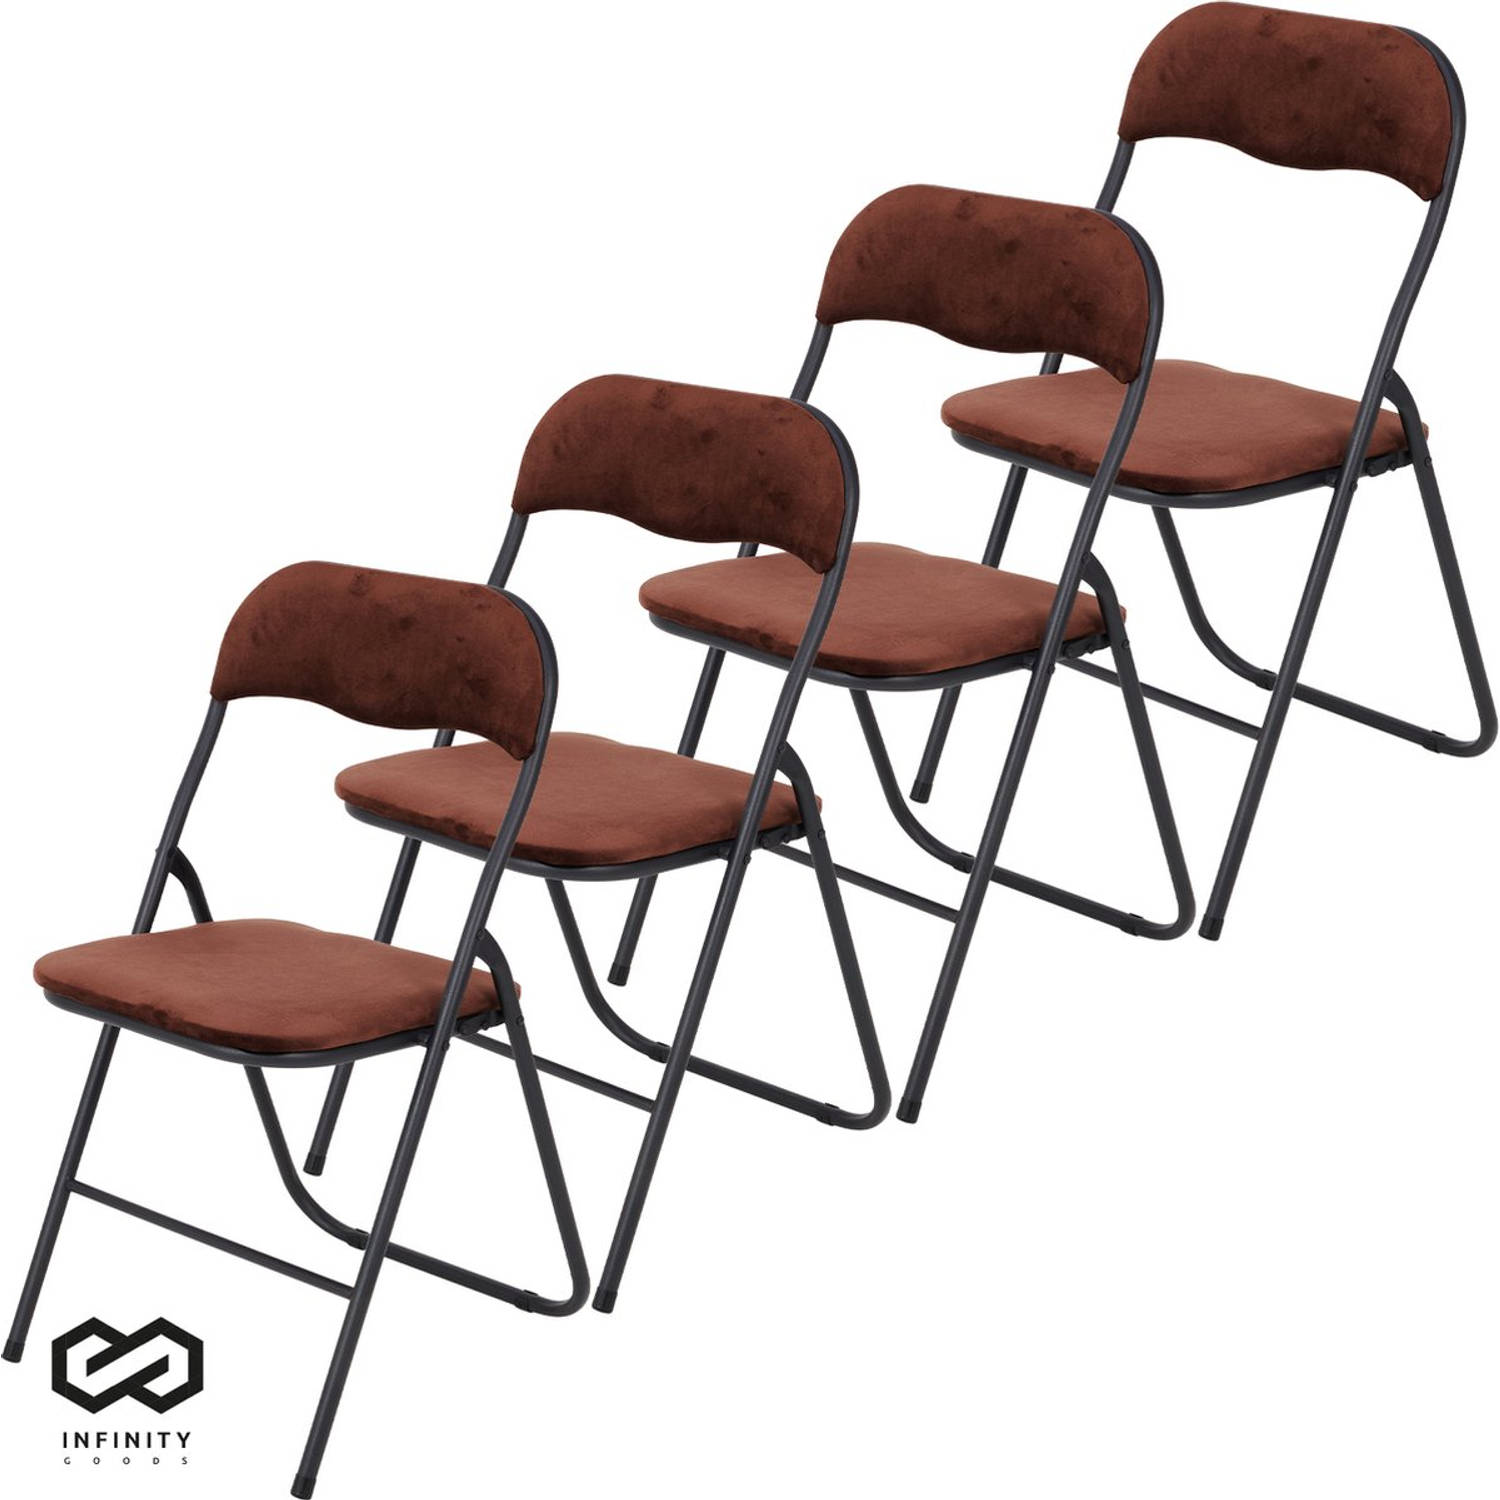 Infinity Goods Klapstoelen - Set van 4 - Vouwstoelen - Fluweel - Eettafelstoelen - Opklapbare Stoelen - 43 x 47 x 80 CM - Stoelen - Bruin